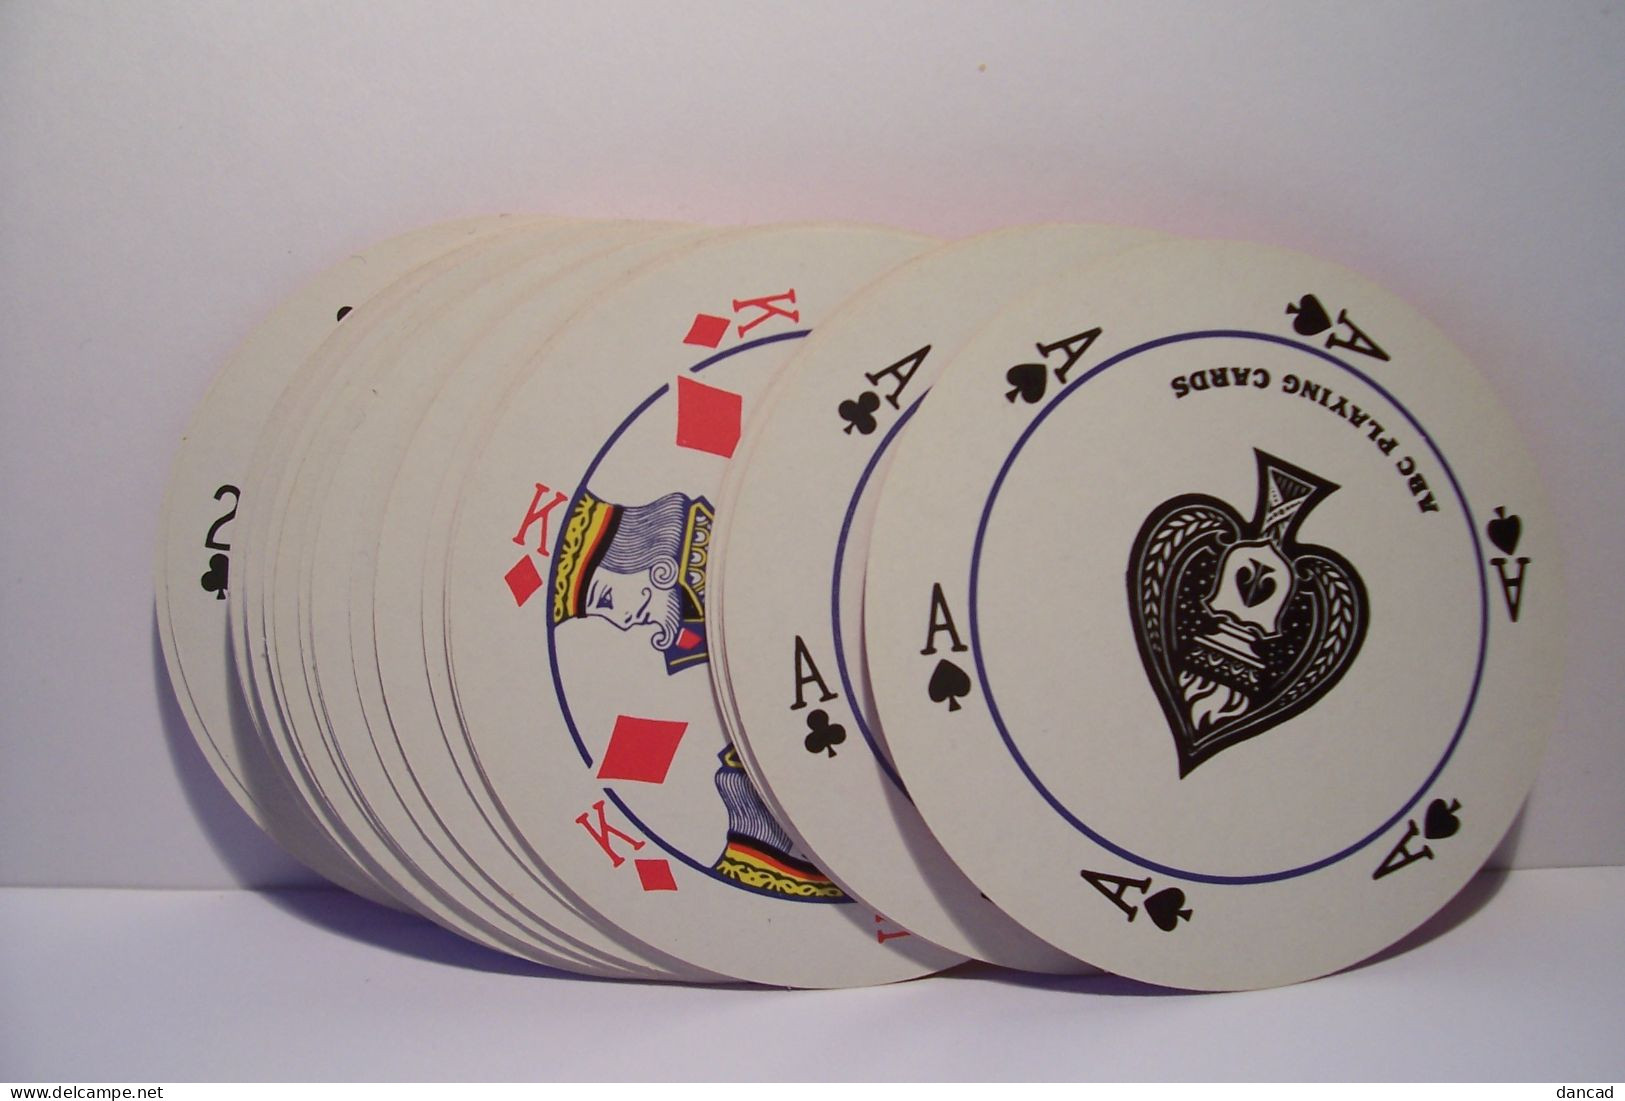 JEU DE 54 CARTES  - ROUND  PLAYING  CARDS     - ( Rondes ) - 54 Kaarten